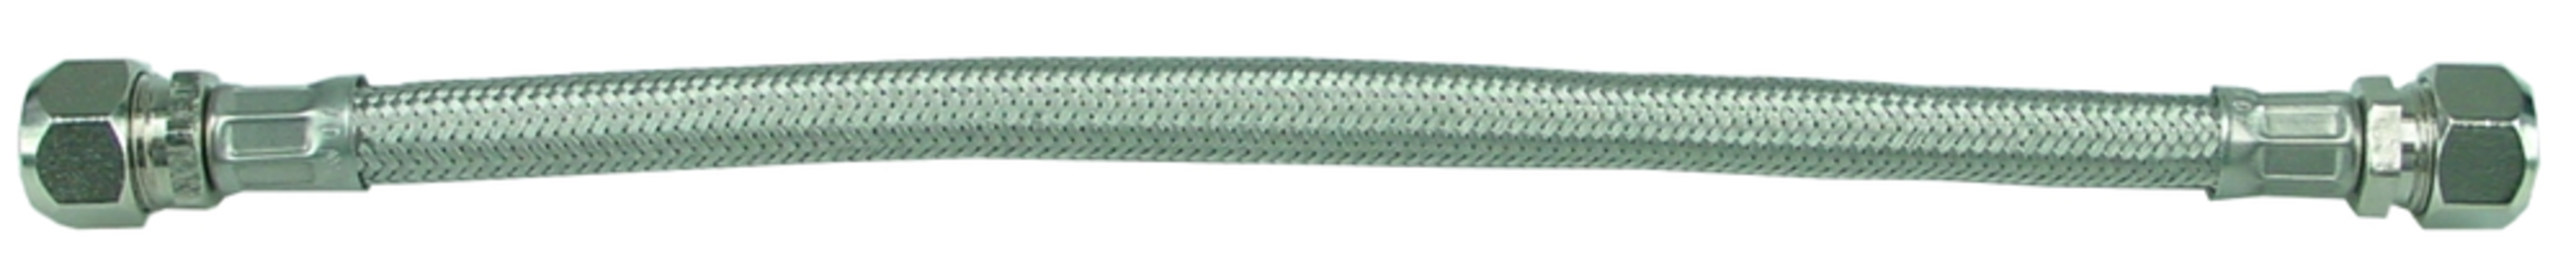 Sub KIWA metalen flex.aansluitslang 1 2bi x1 2bi 60 cm